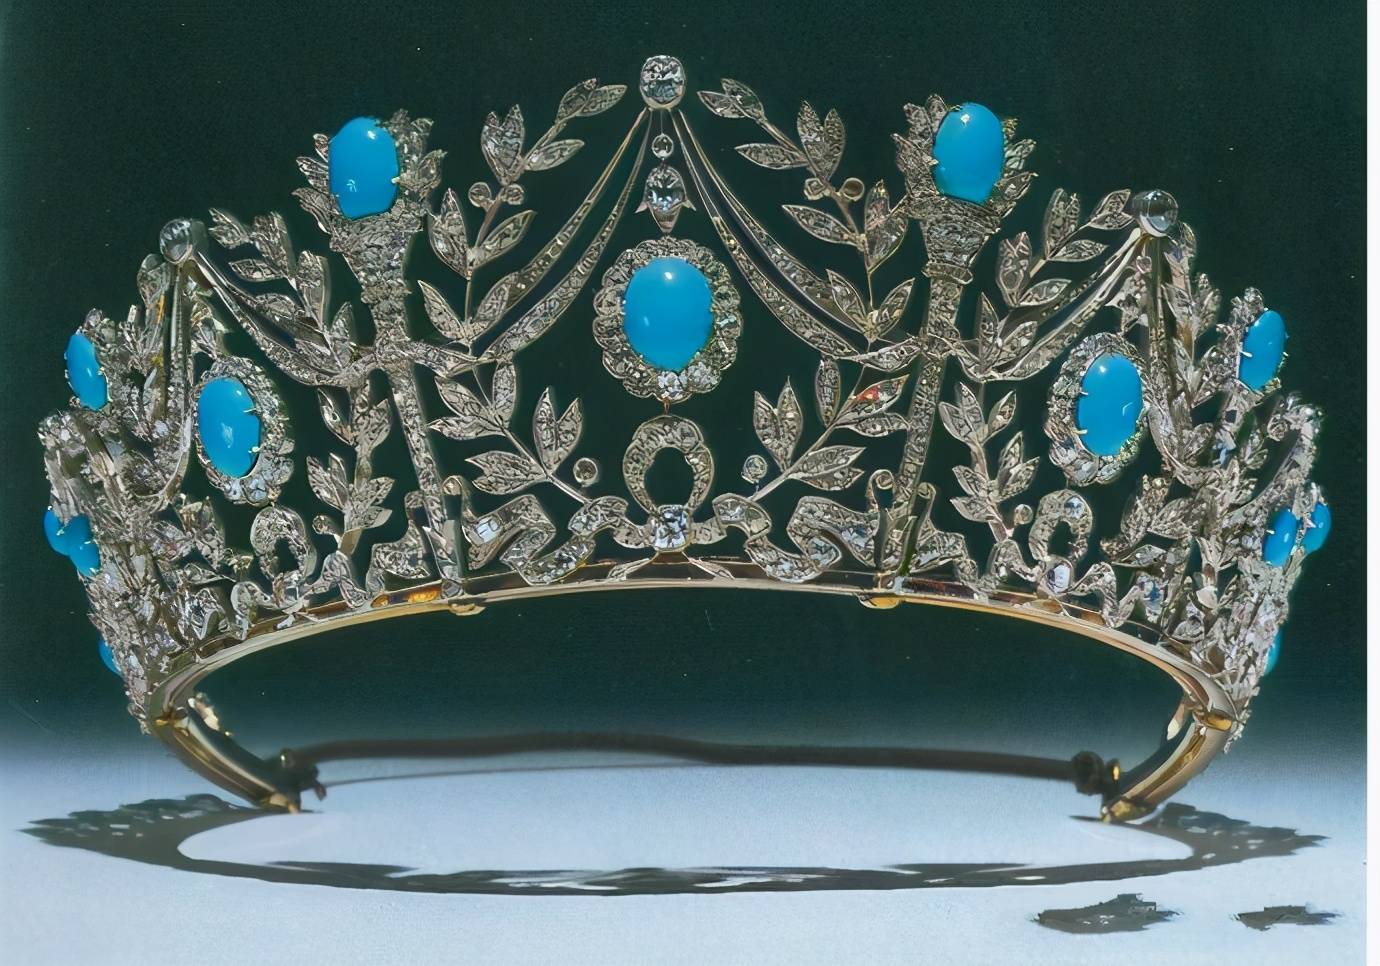 欧洲王室王冠奢华高贵日本皇室王冠几乎一个样高仿上不了台面